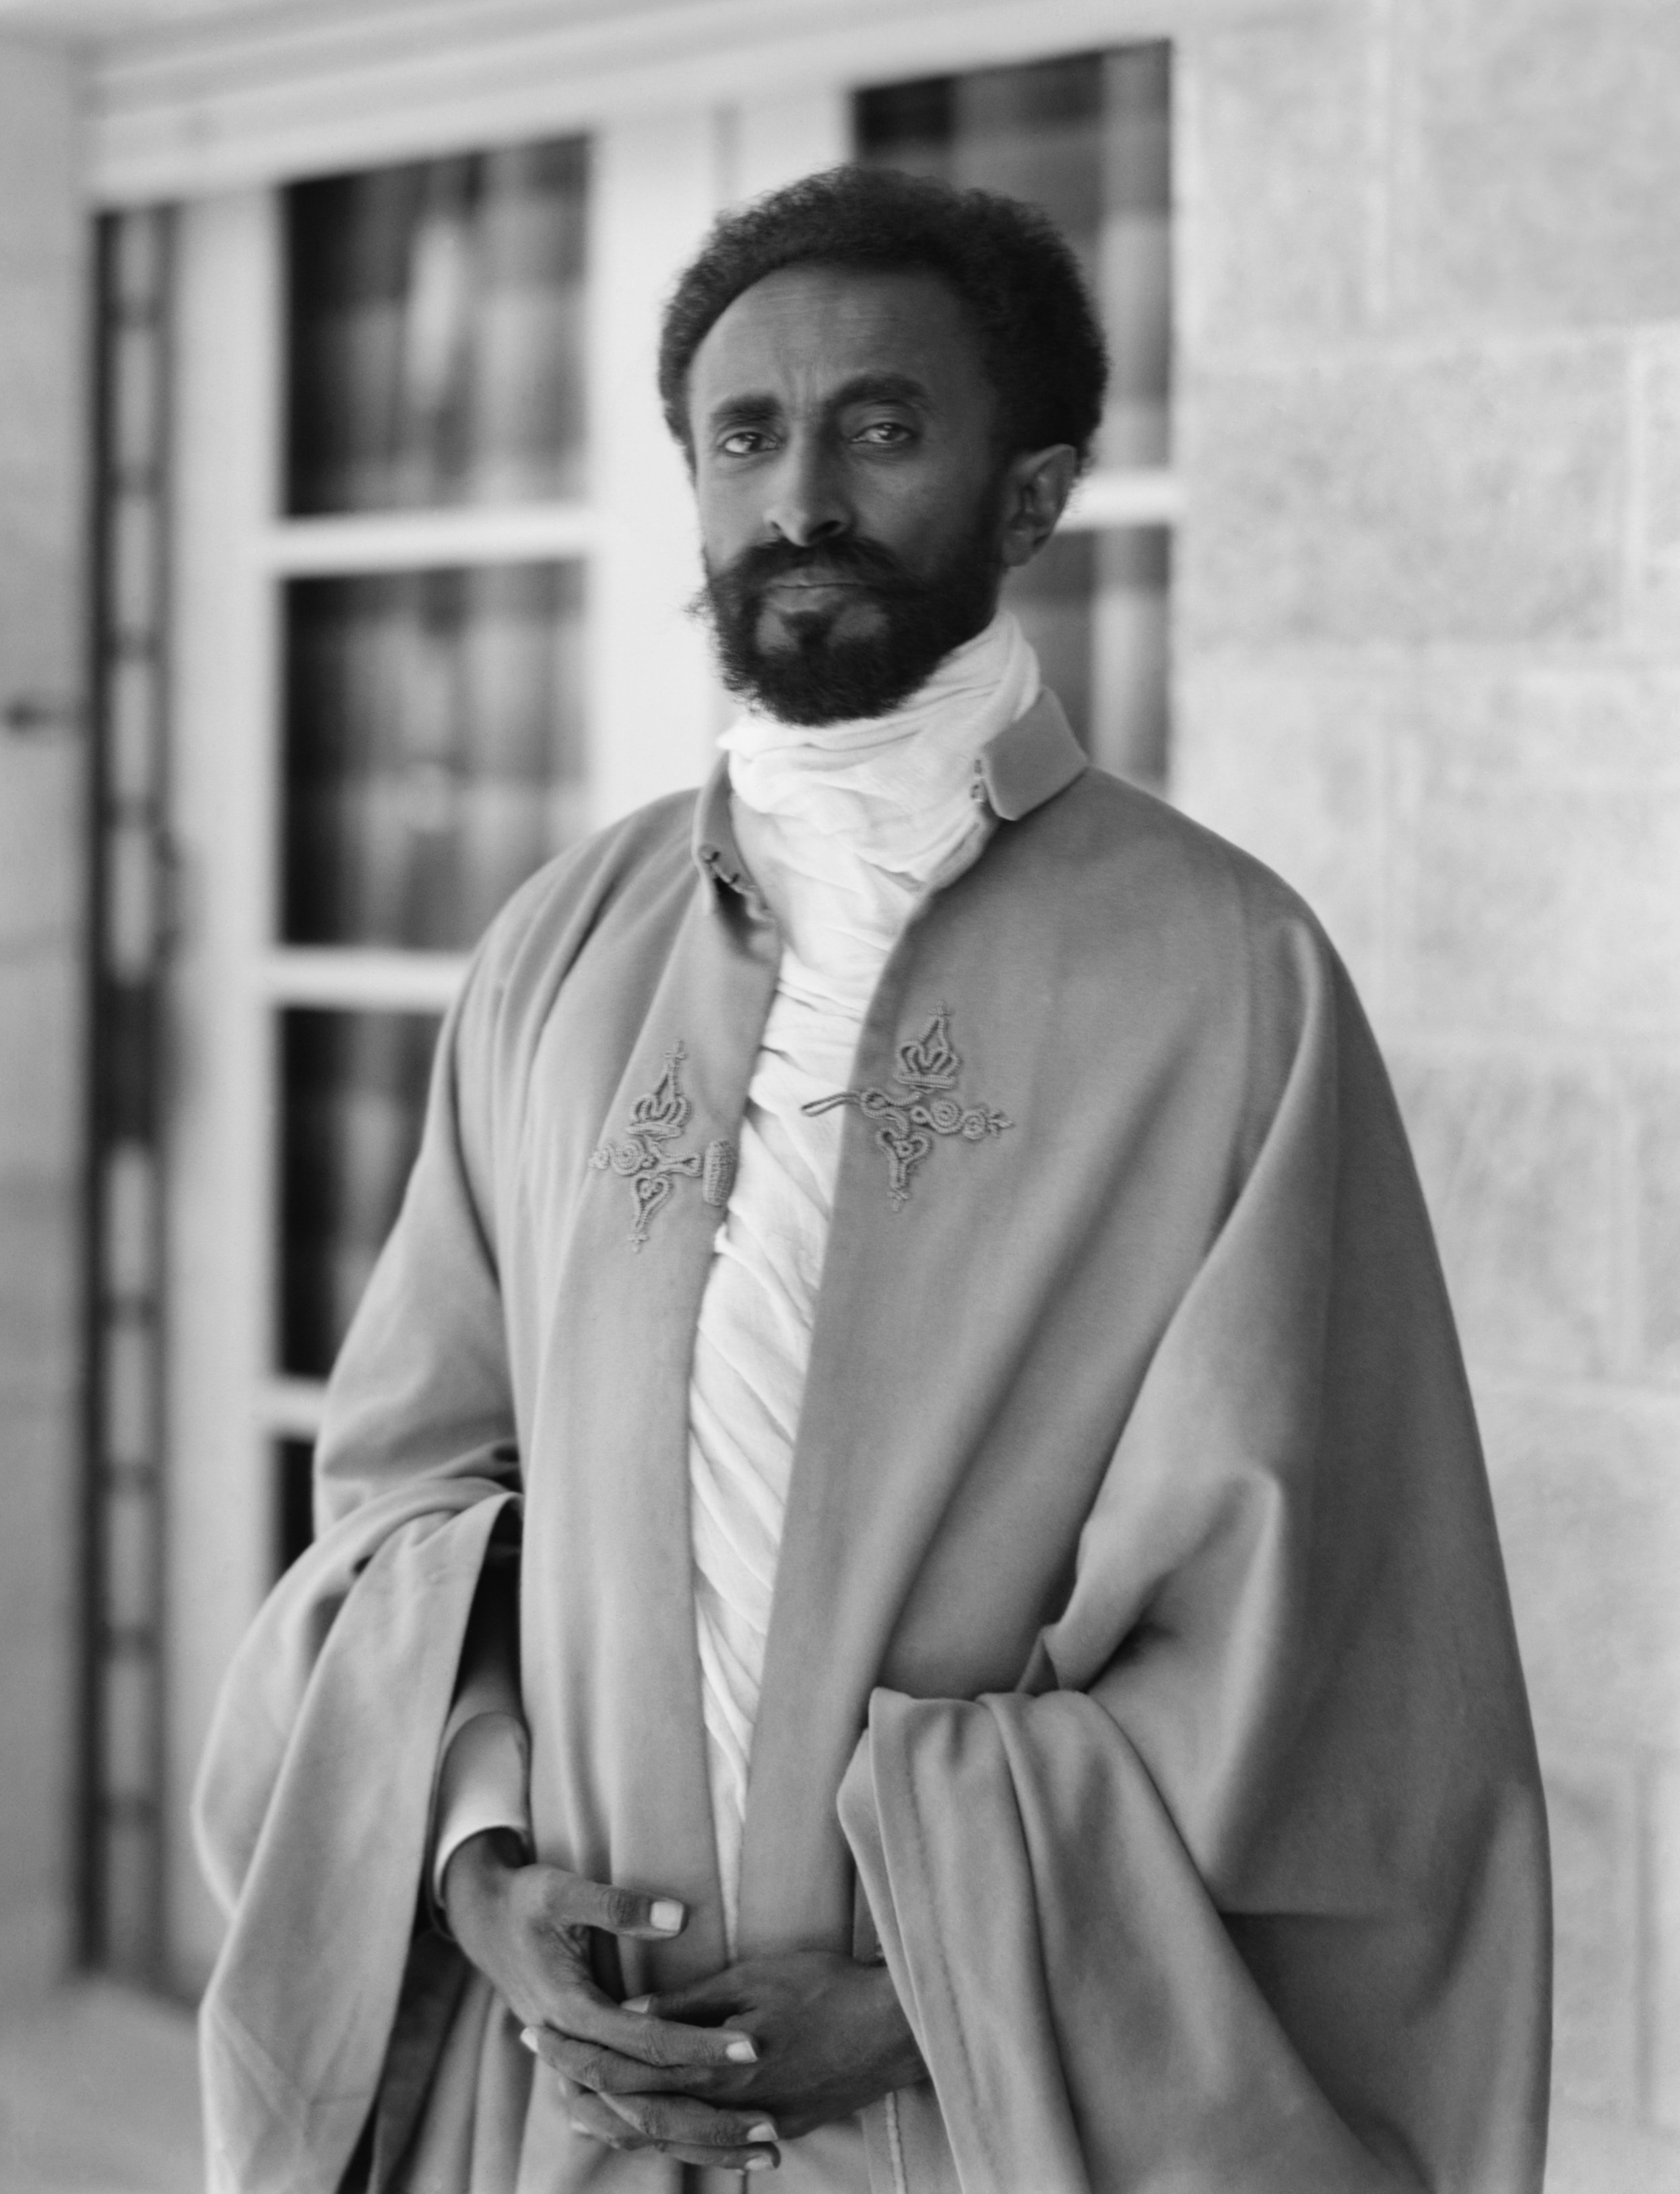 Torna el millor Kapuściński amb 'L'emperador' Haile Selassie